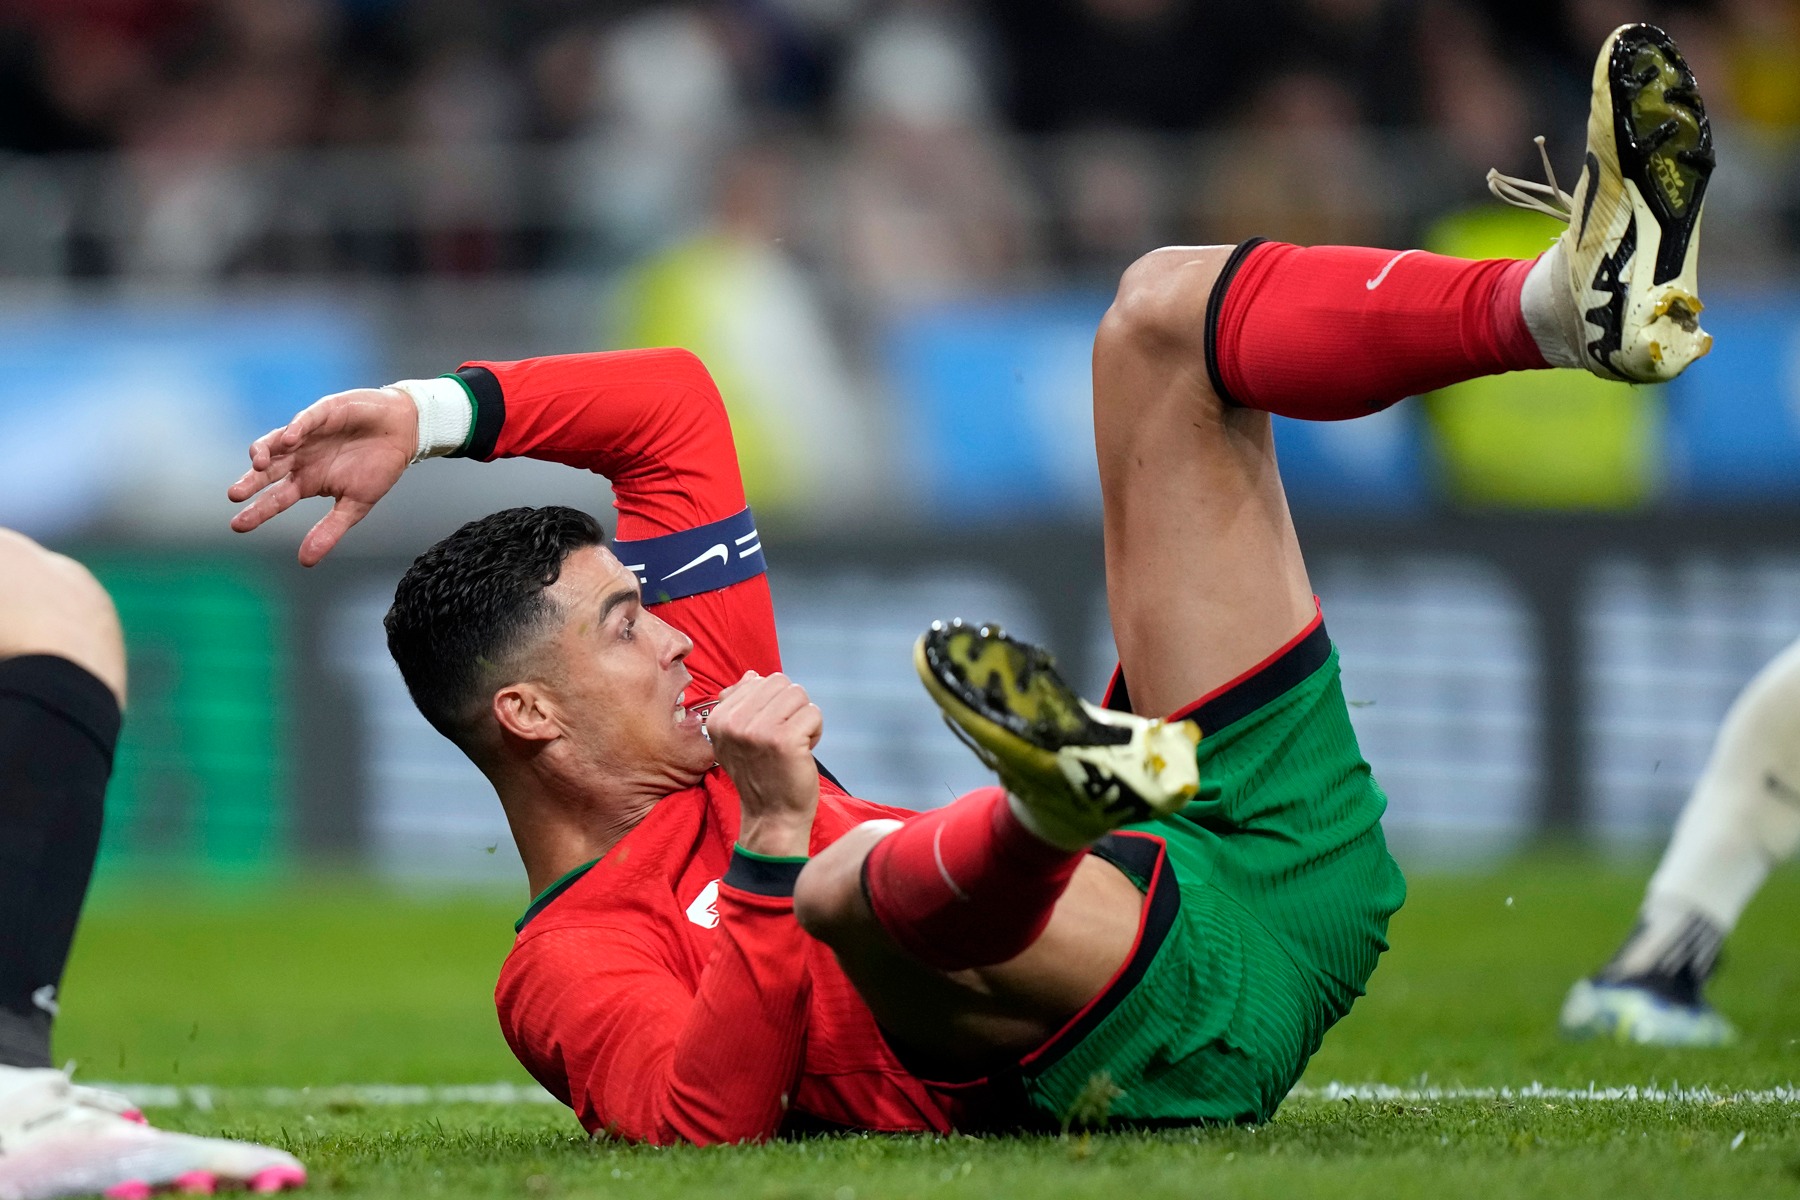 VIDEO: Ste videli, kako jezen je bil Ronaldo po tekmi?